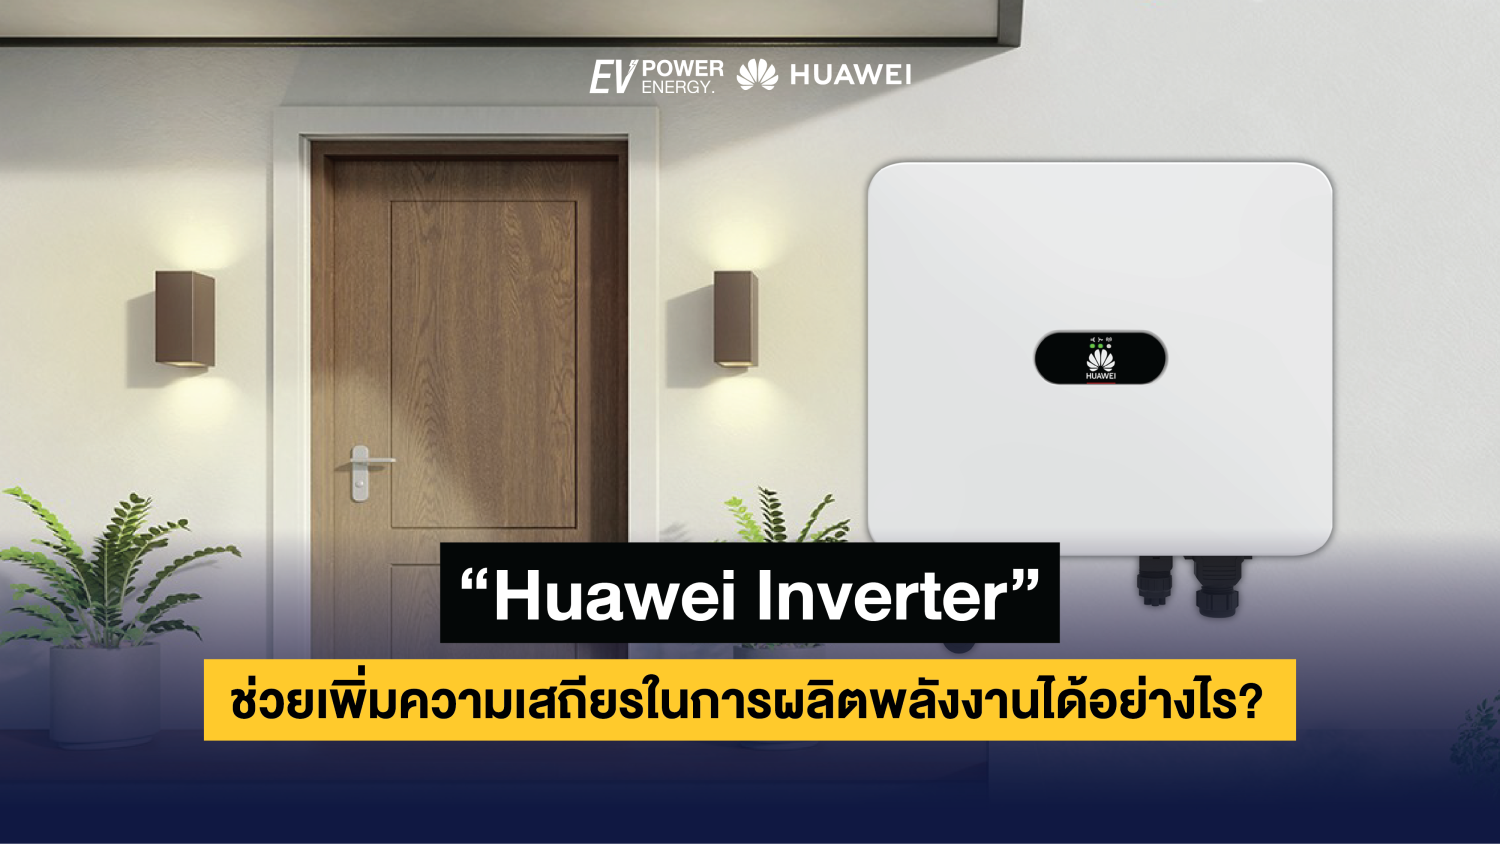 Huawei Inverter ช่วยเพิ่มความเสถียรในการผลิตพลังงานได้อย่างไร 1